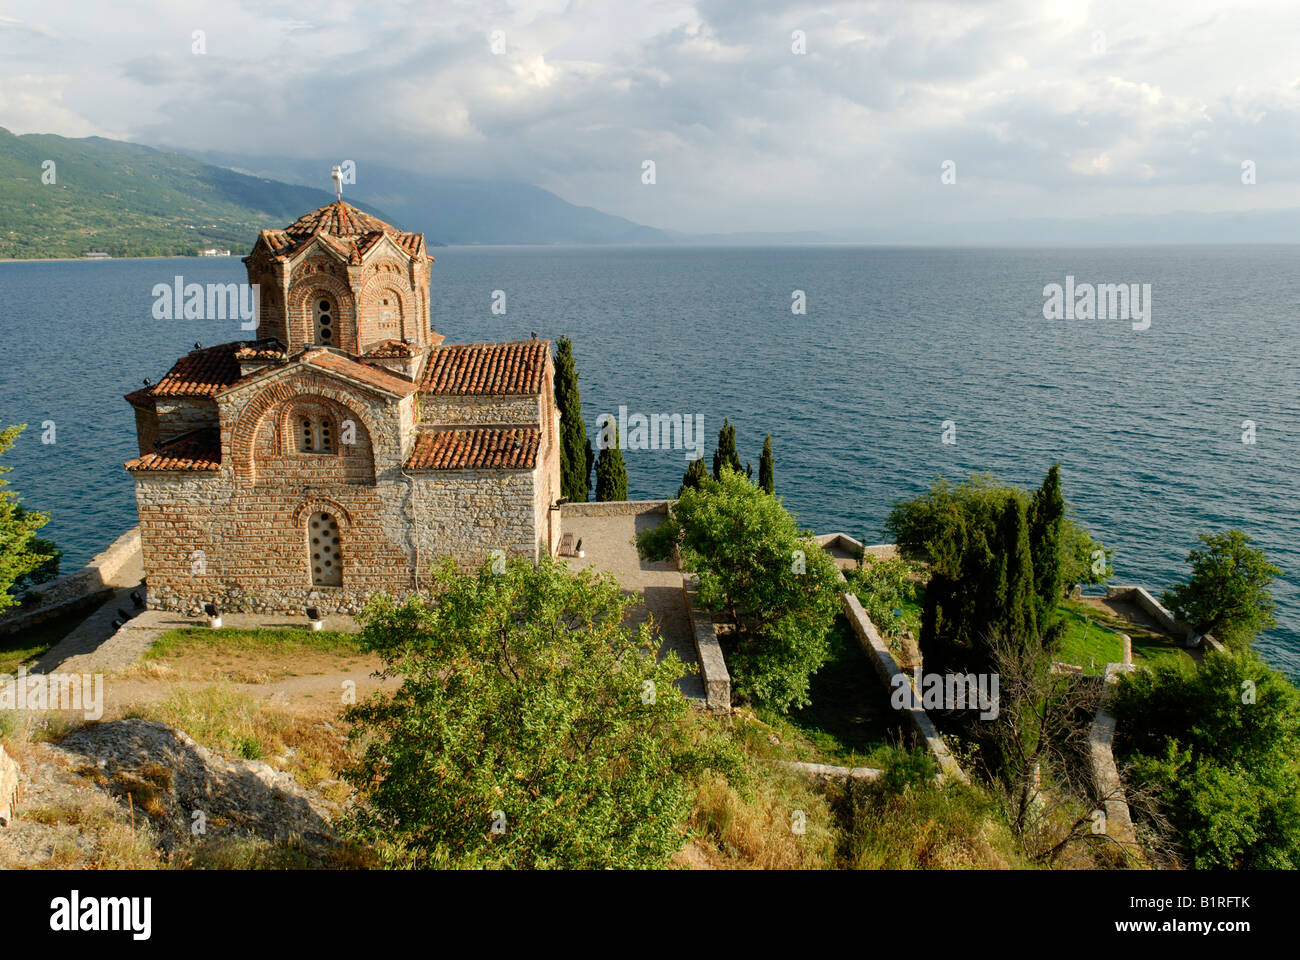 La chiesa bizantina di Sveti Jovan, San Giovanni, da Kaneo sul lago di Ohrid, Sito Patrimonio Mondiale dell'UNESCO, Macedonia, ex Repubblica jugoslava di Macedonia, Ex Yugosl Foto Stock